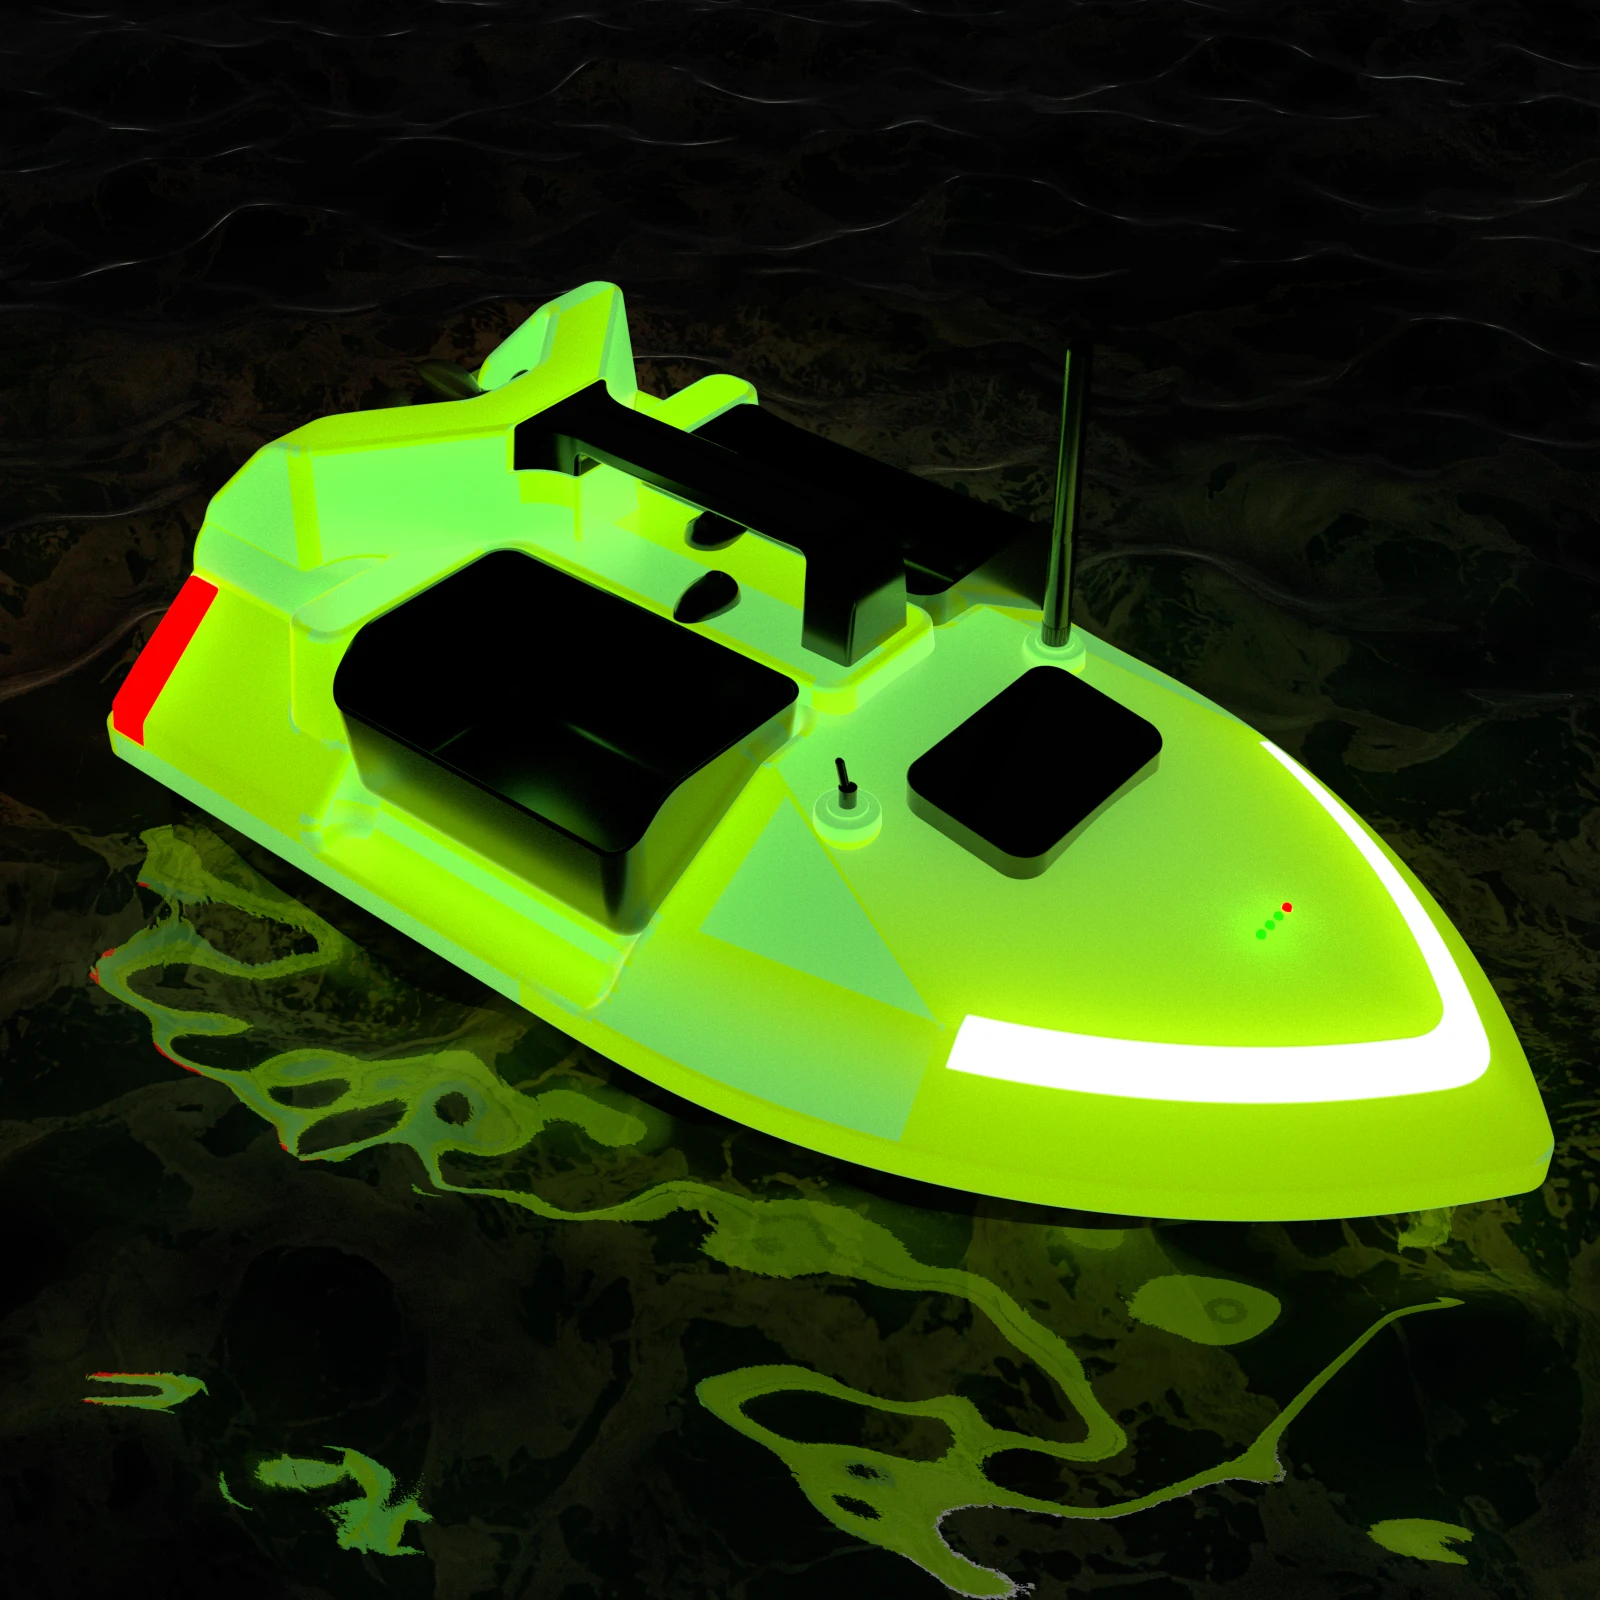 V020 40 Points GPS Self-Illuminating RC Fishing Bait Boat 500M Auto Return Triple Bin 4.4lb Baiting Loading For Night Fishing